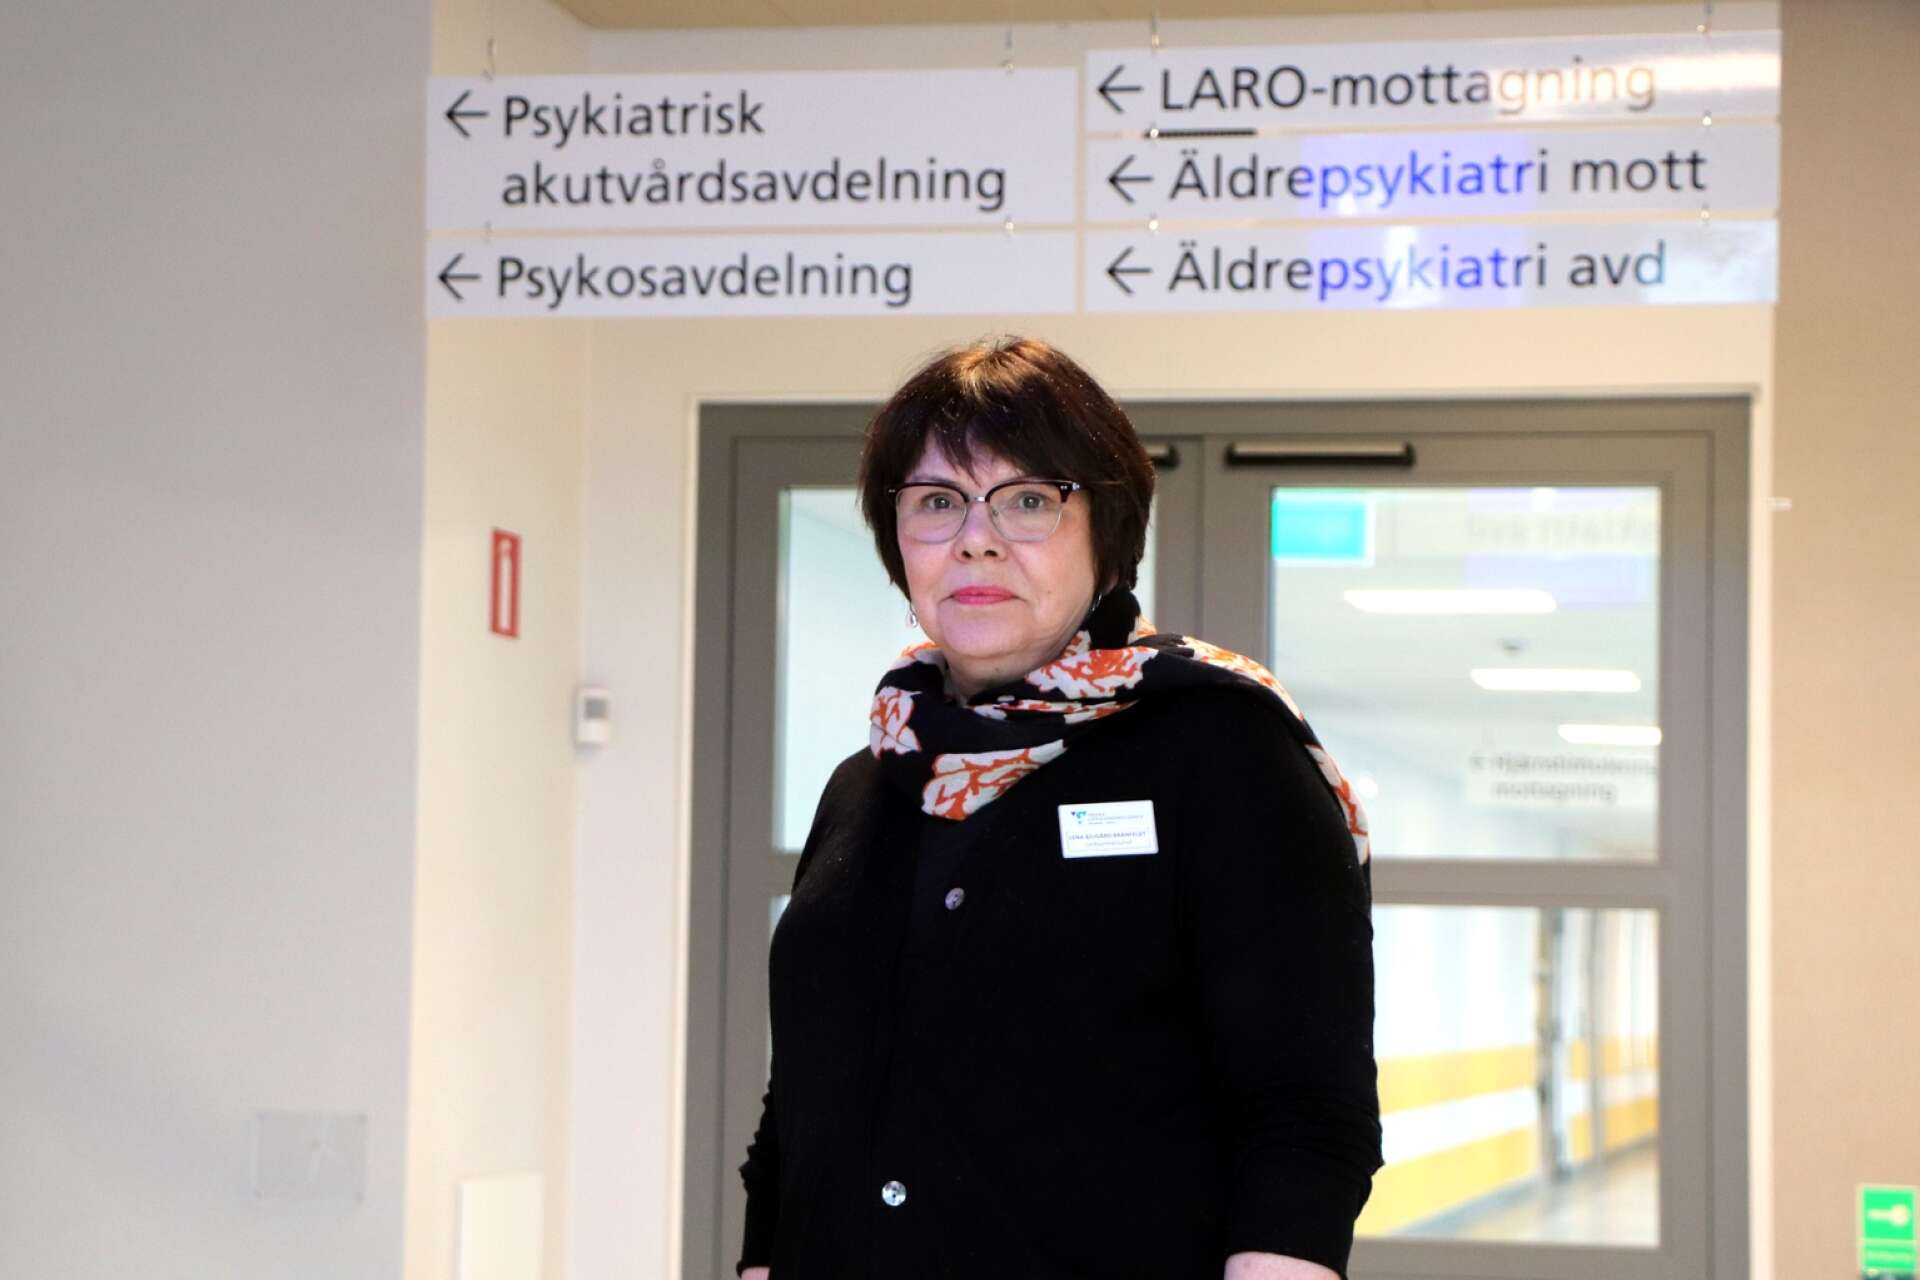 Lena Bjugård Bränfeldt, verksamhetschef, tycker att framtiden ser ljus ut med allt fler som vill jobba inom psykiatrin.